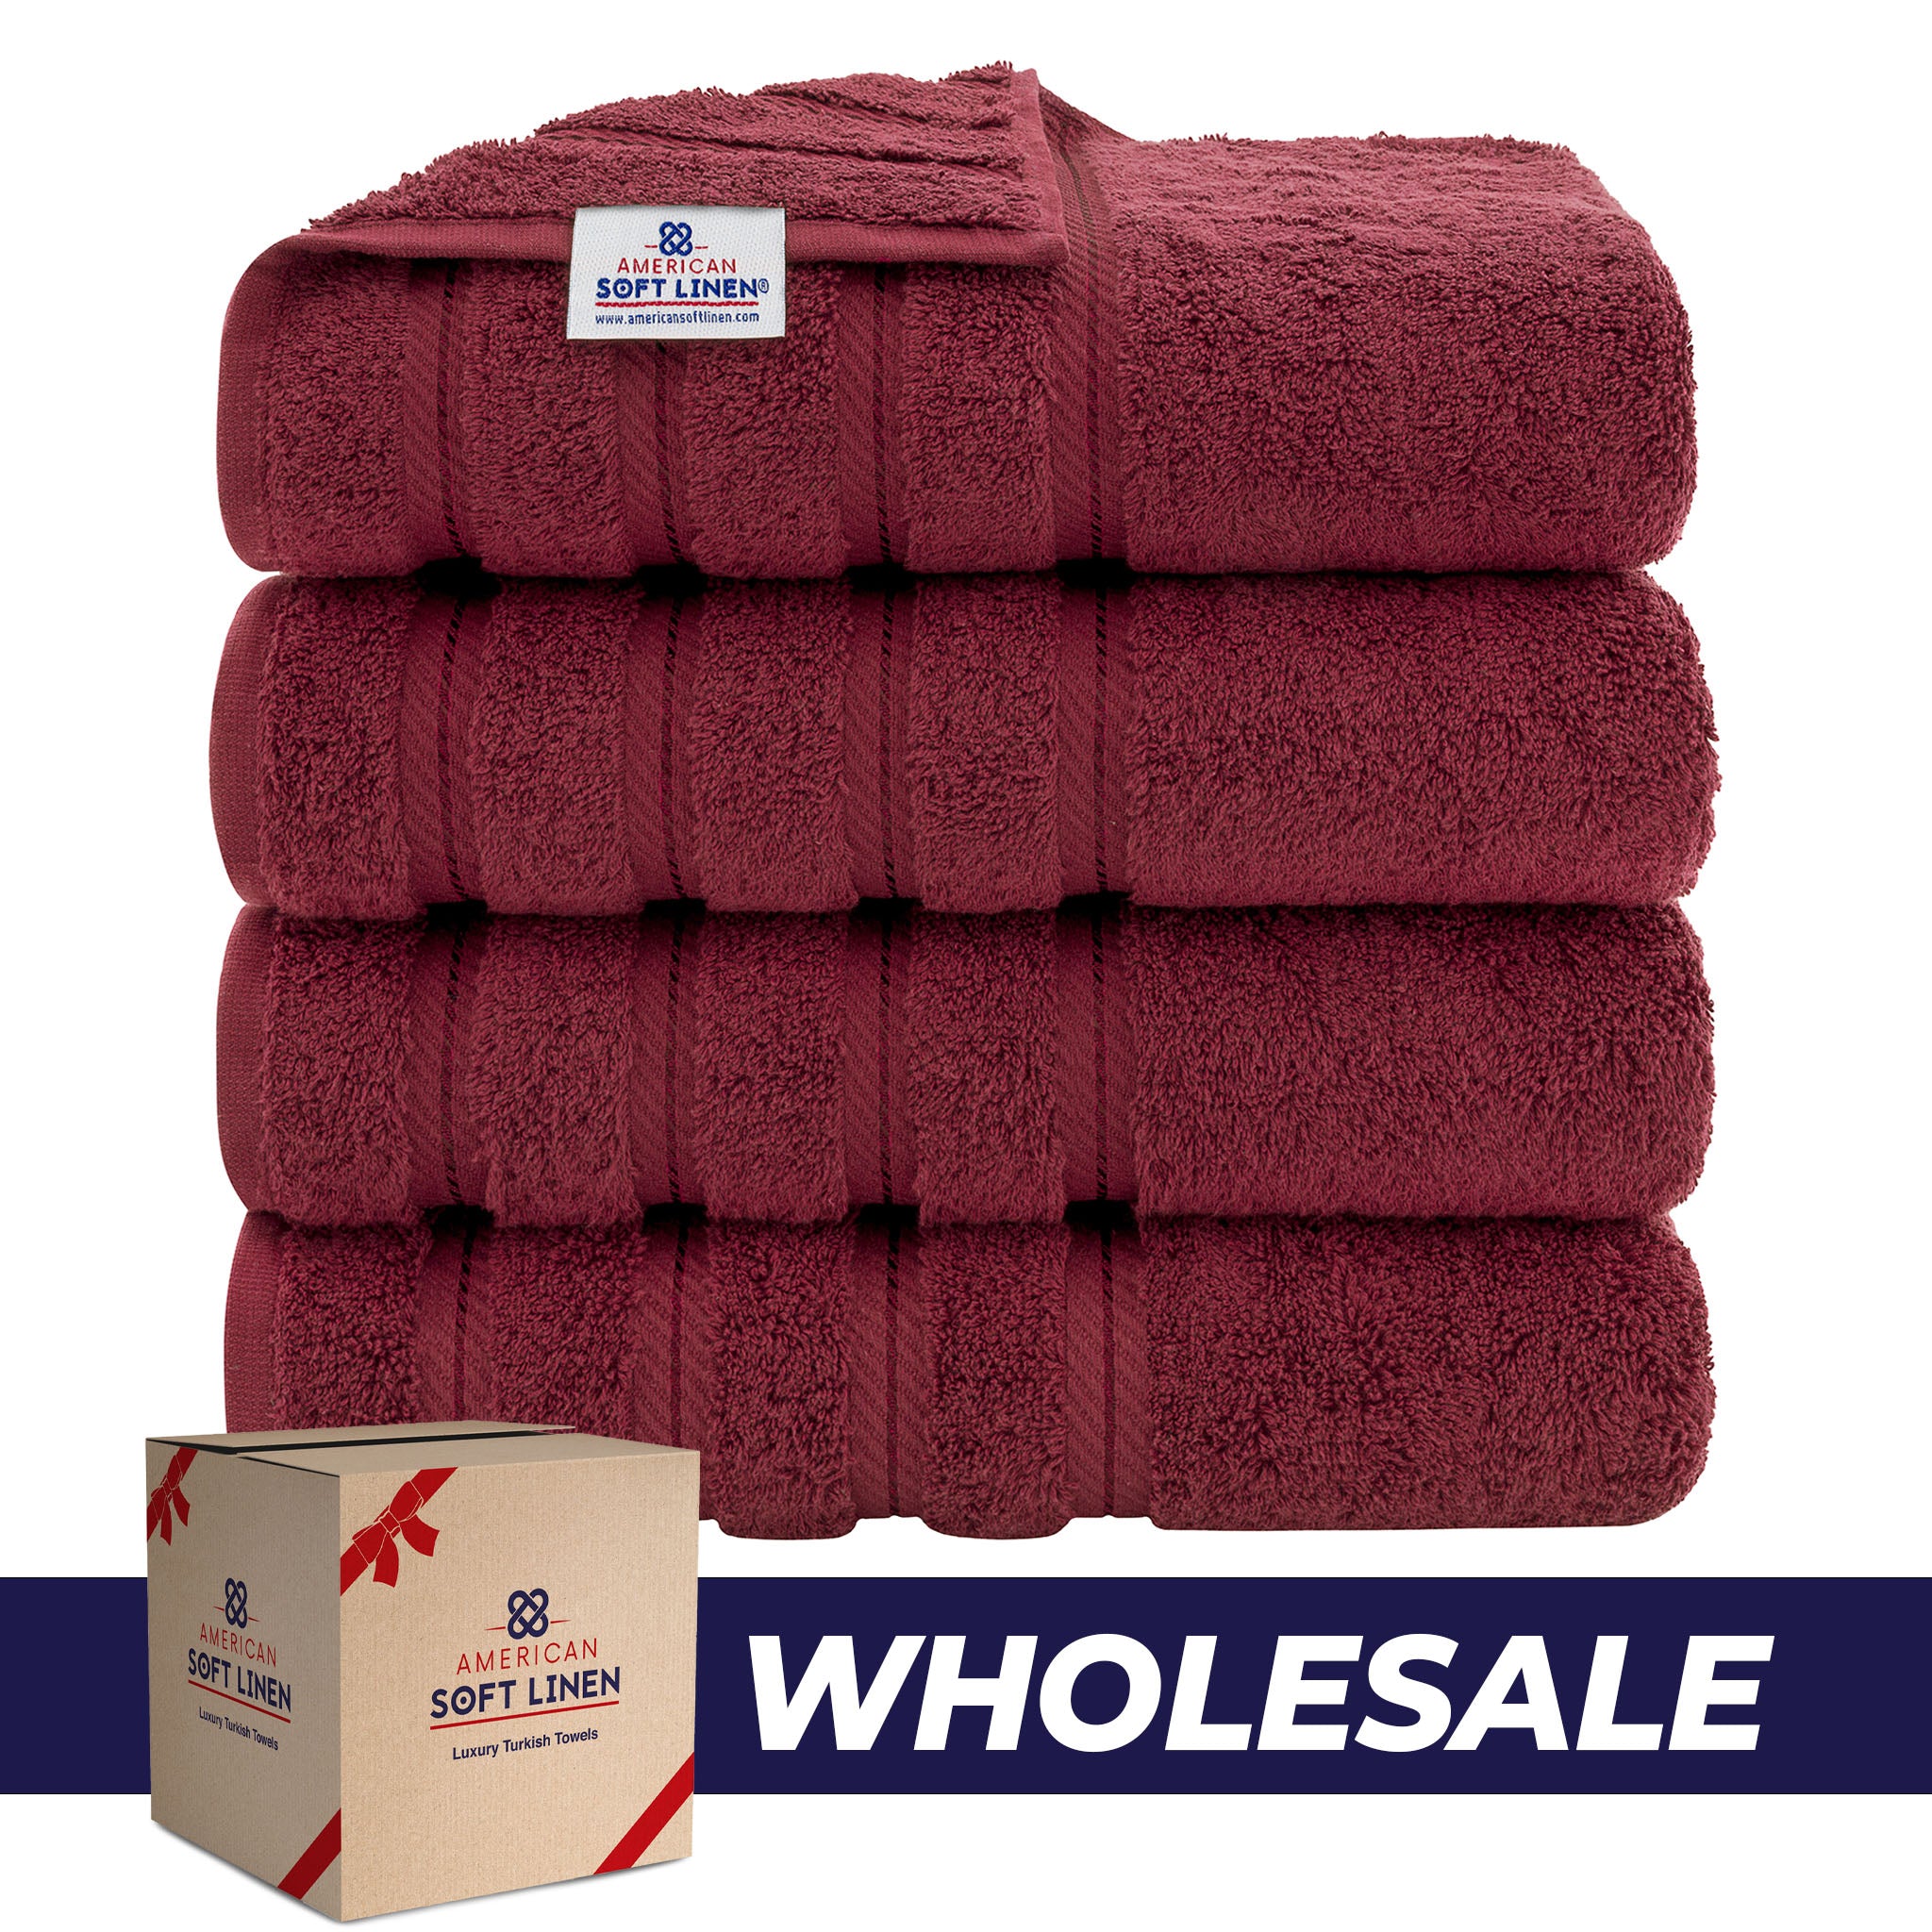 American Soft Linen 100% Turkish Cotton 4 Pack Bath Towel Set Wholesale bordeaux-red-0